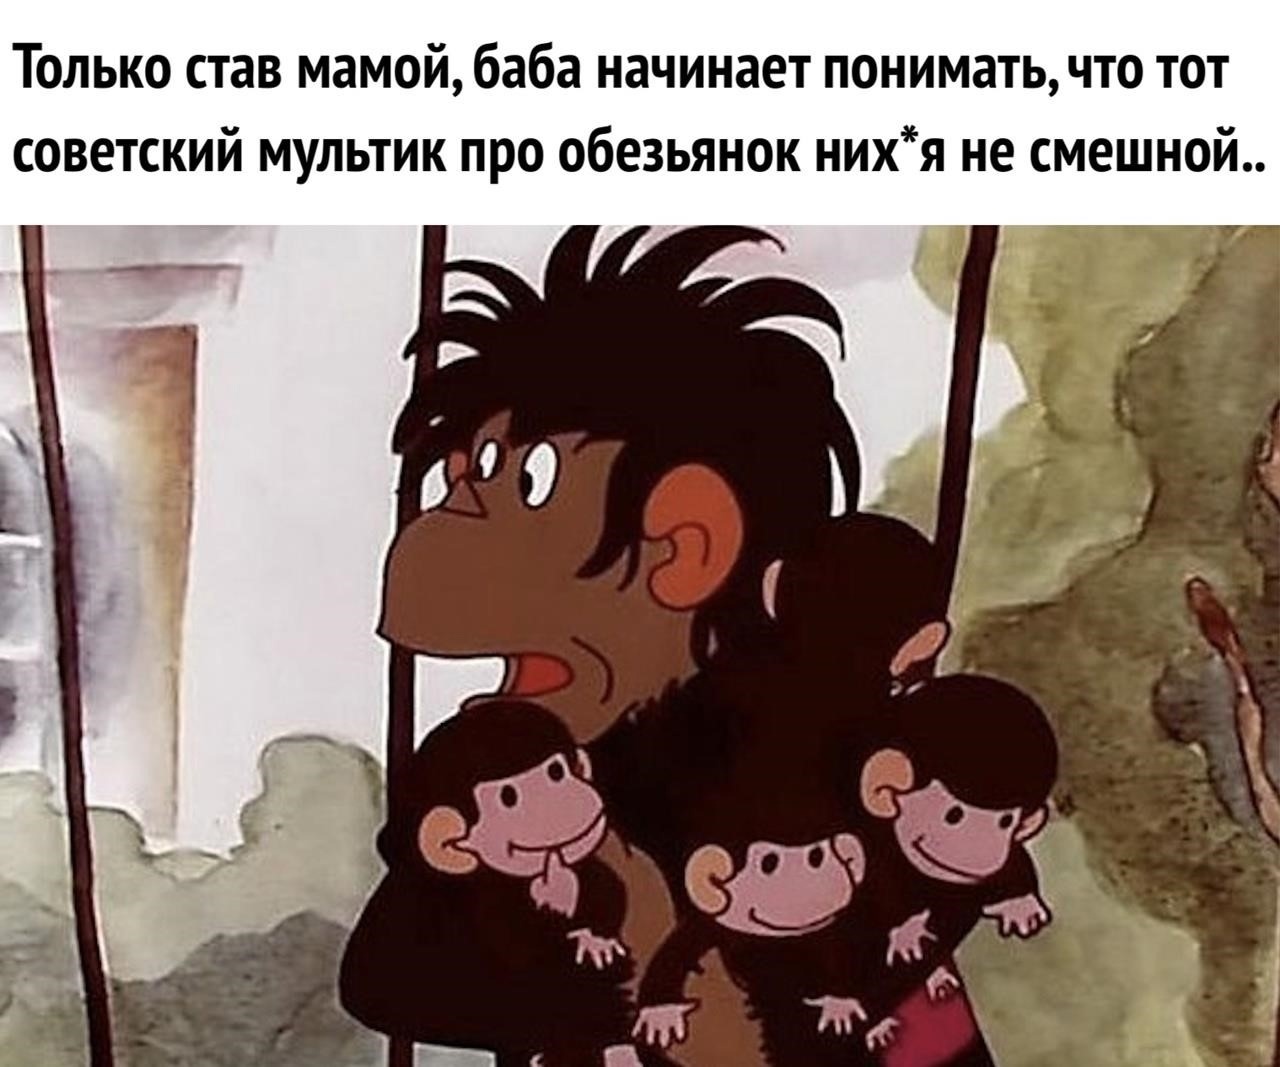 Мульт про маму обезьяну и ее детей